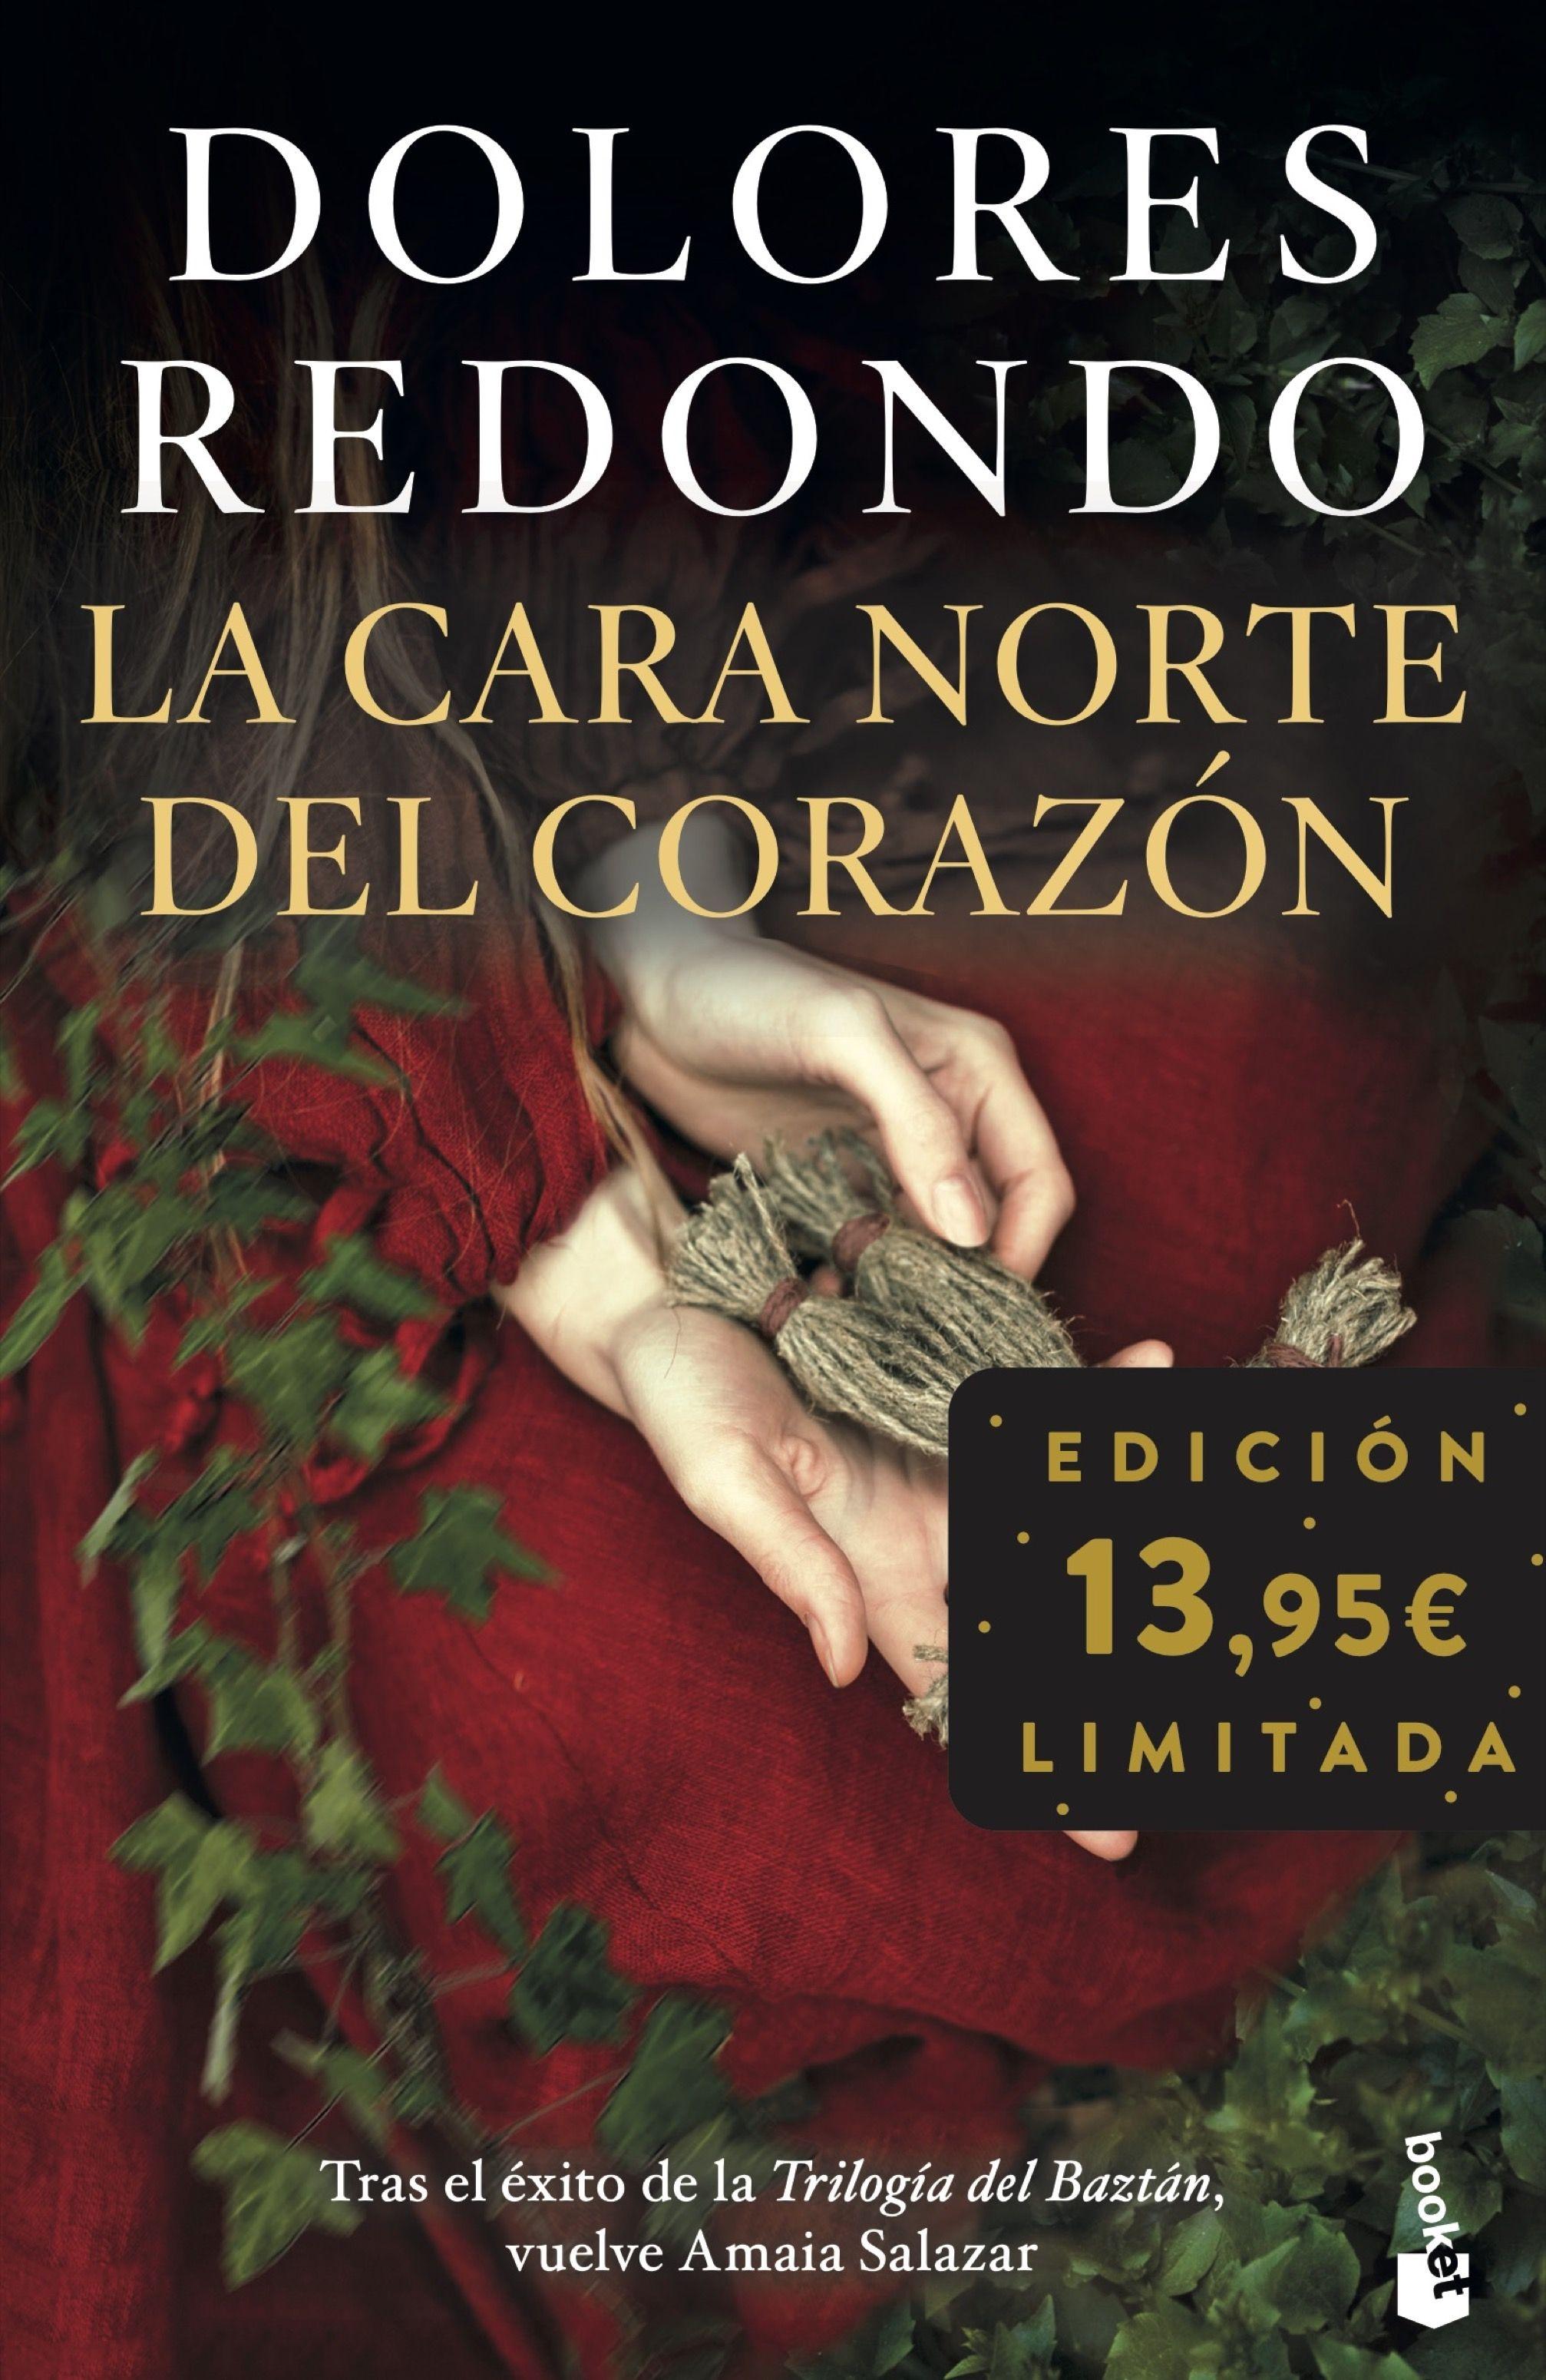 La Cara Norte del Corazón "Edición Limitada"